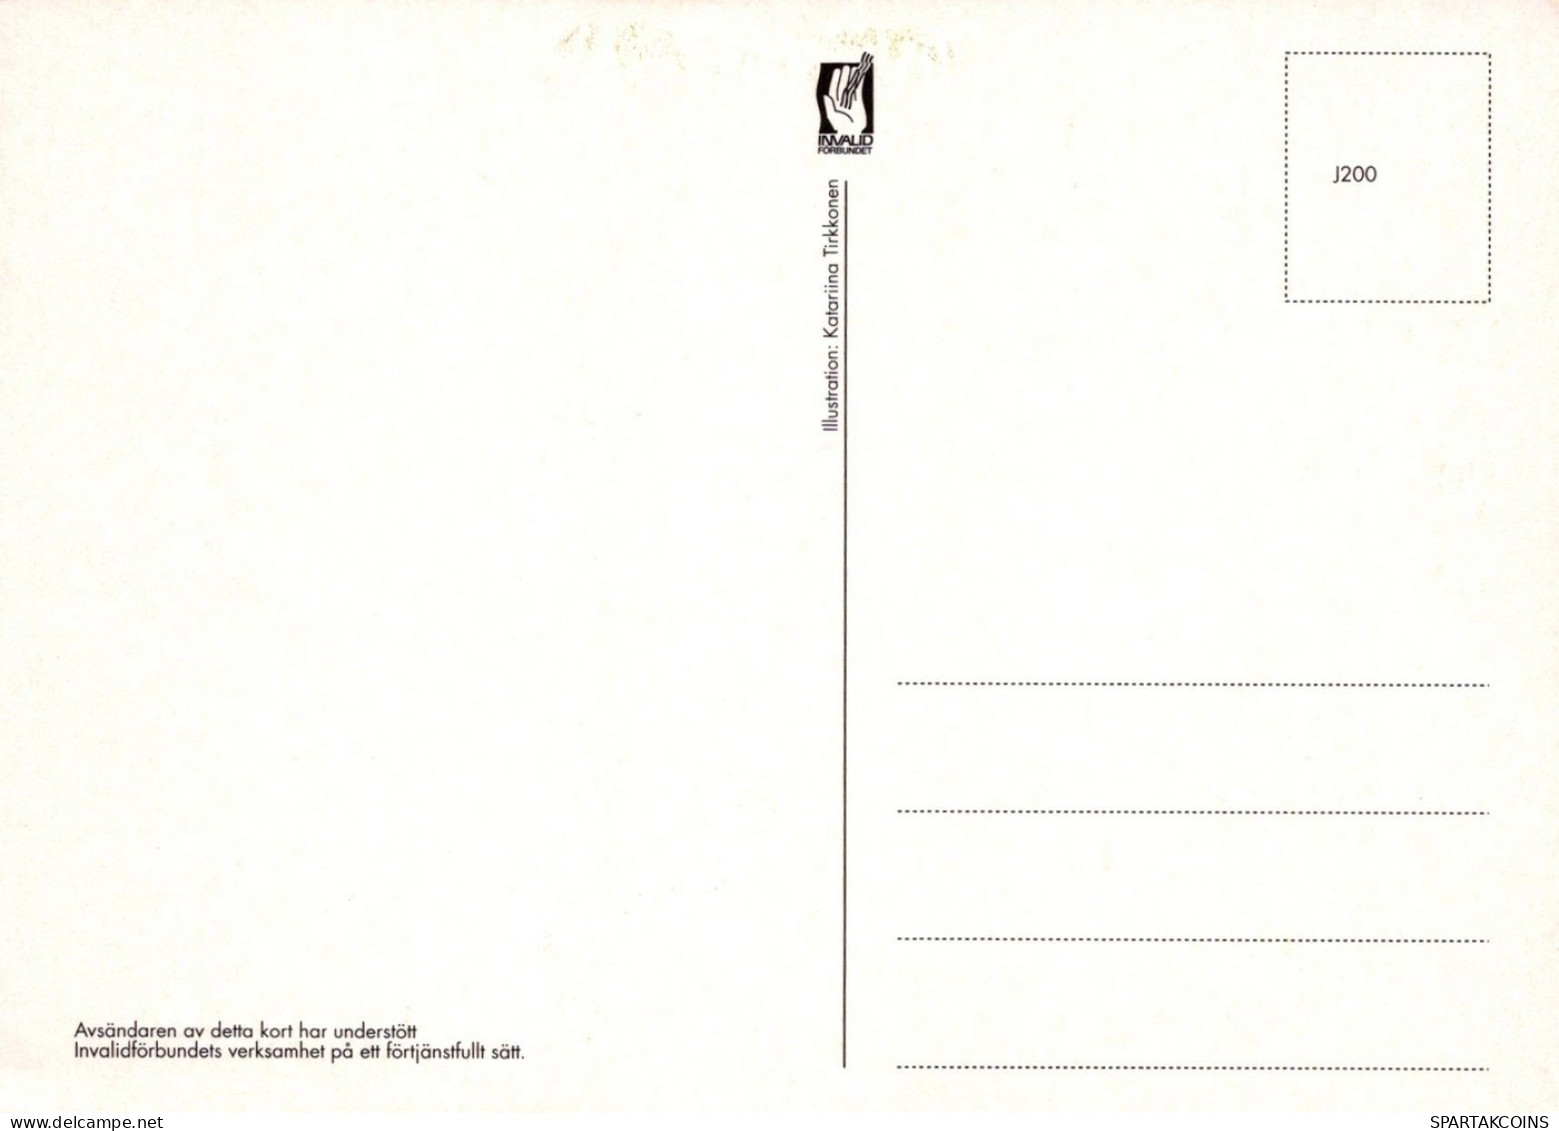 OISEAU Animaux Vintage Carte Postale CPSM #PAN007.FR - Oiseaux